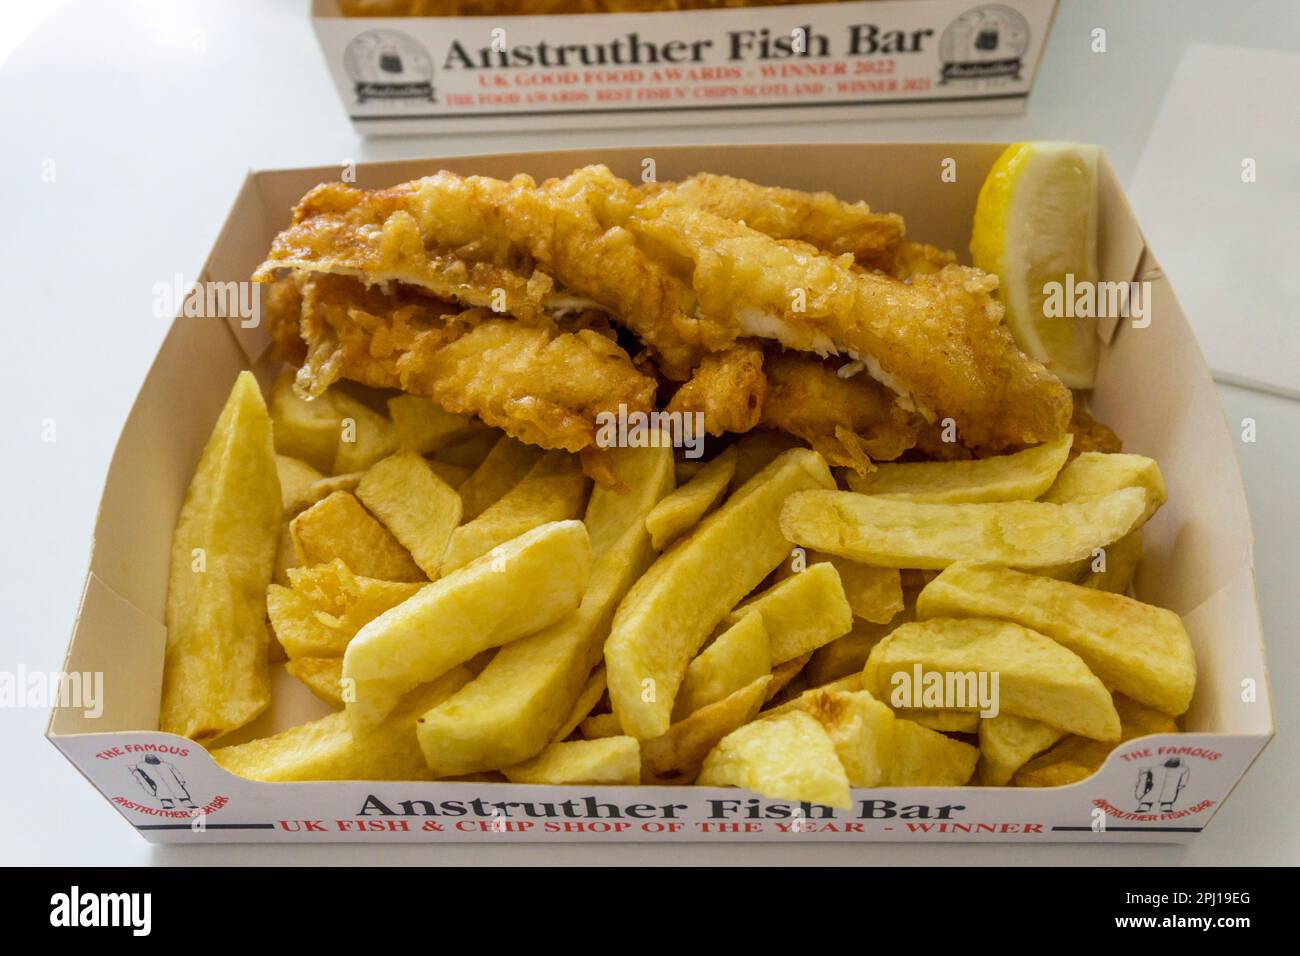 Eine Portion Fish and Chips aus der Anstruther Fish Bar in Fife, Schottland. Stockfoto